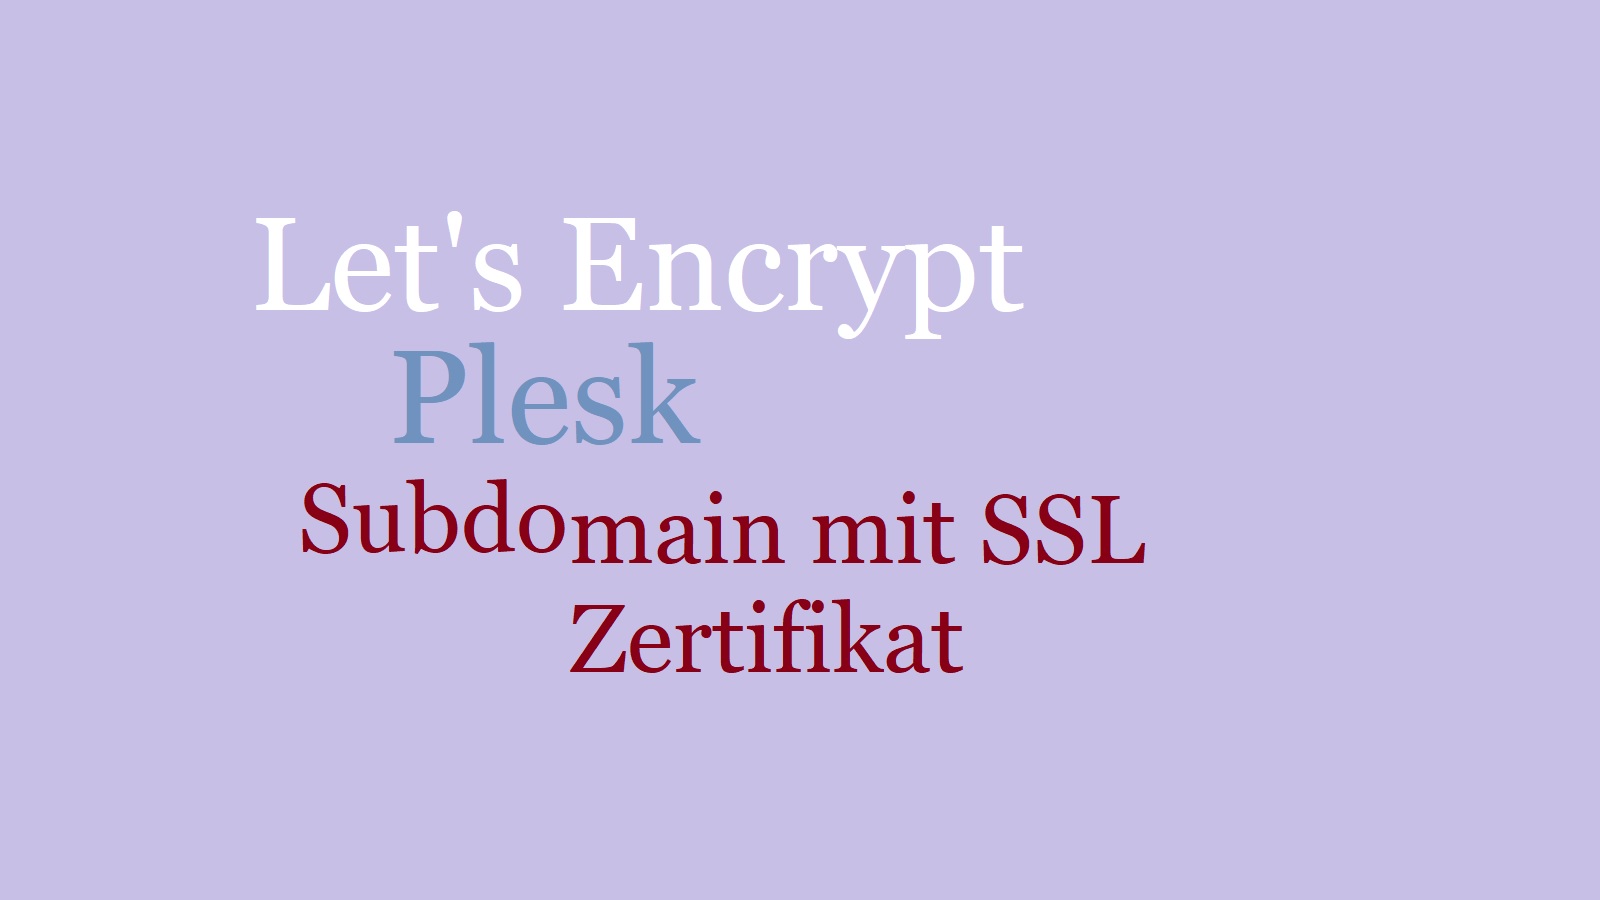 Let’s Encrypt – SSL Zertifikat für Subdomain mit Plesk erstellen – so geht’s